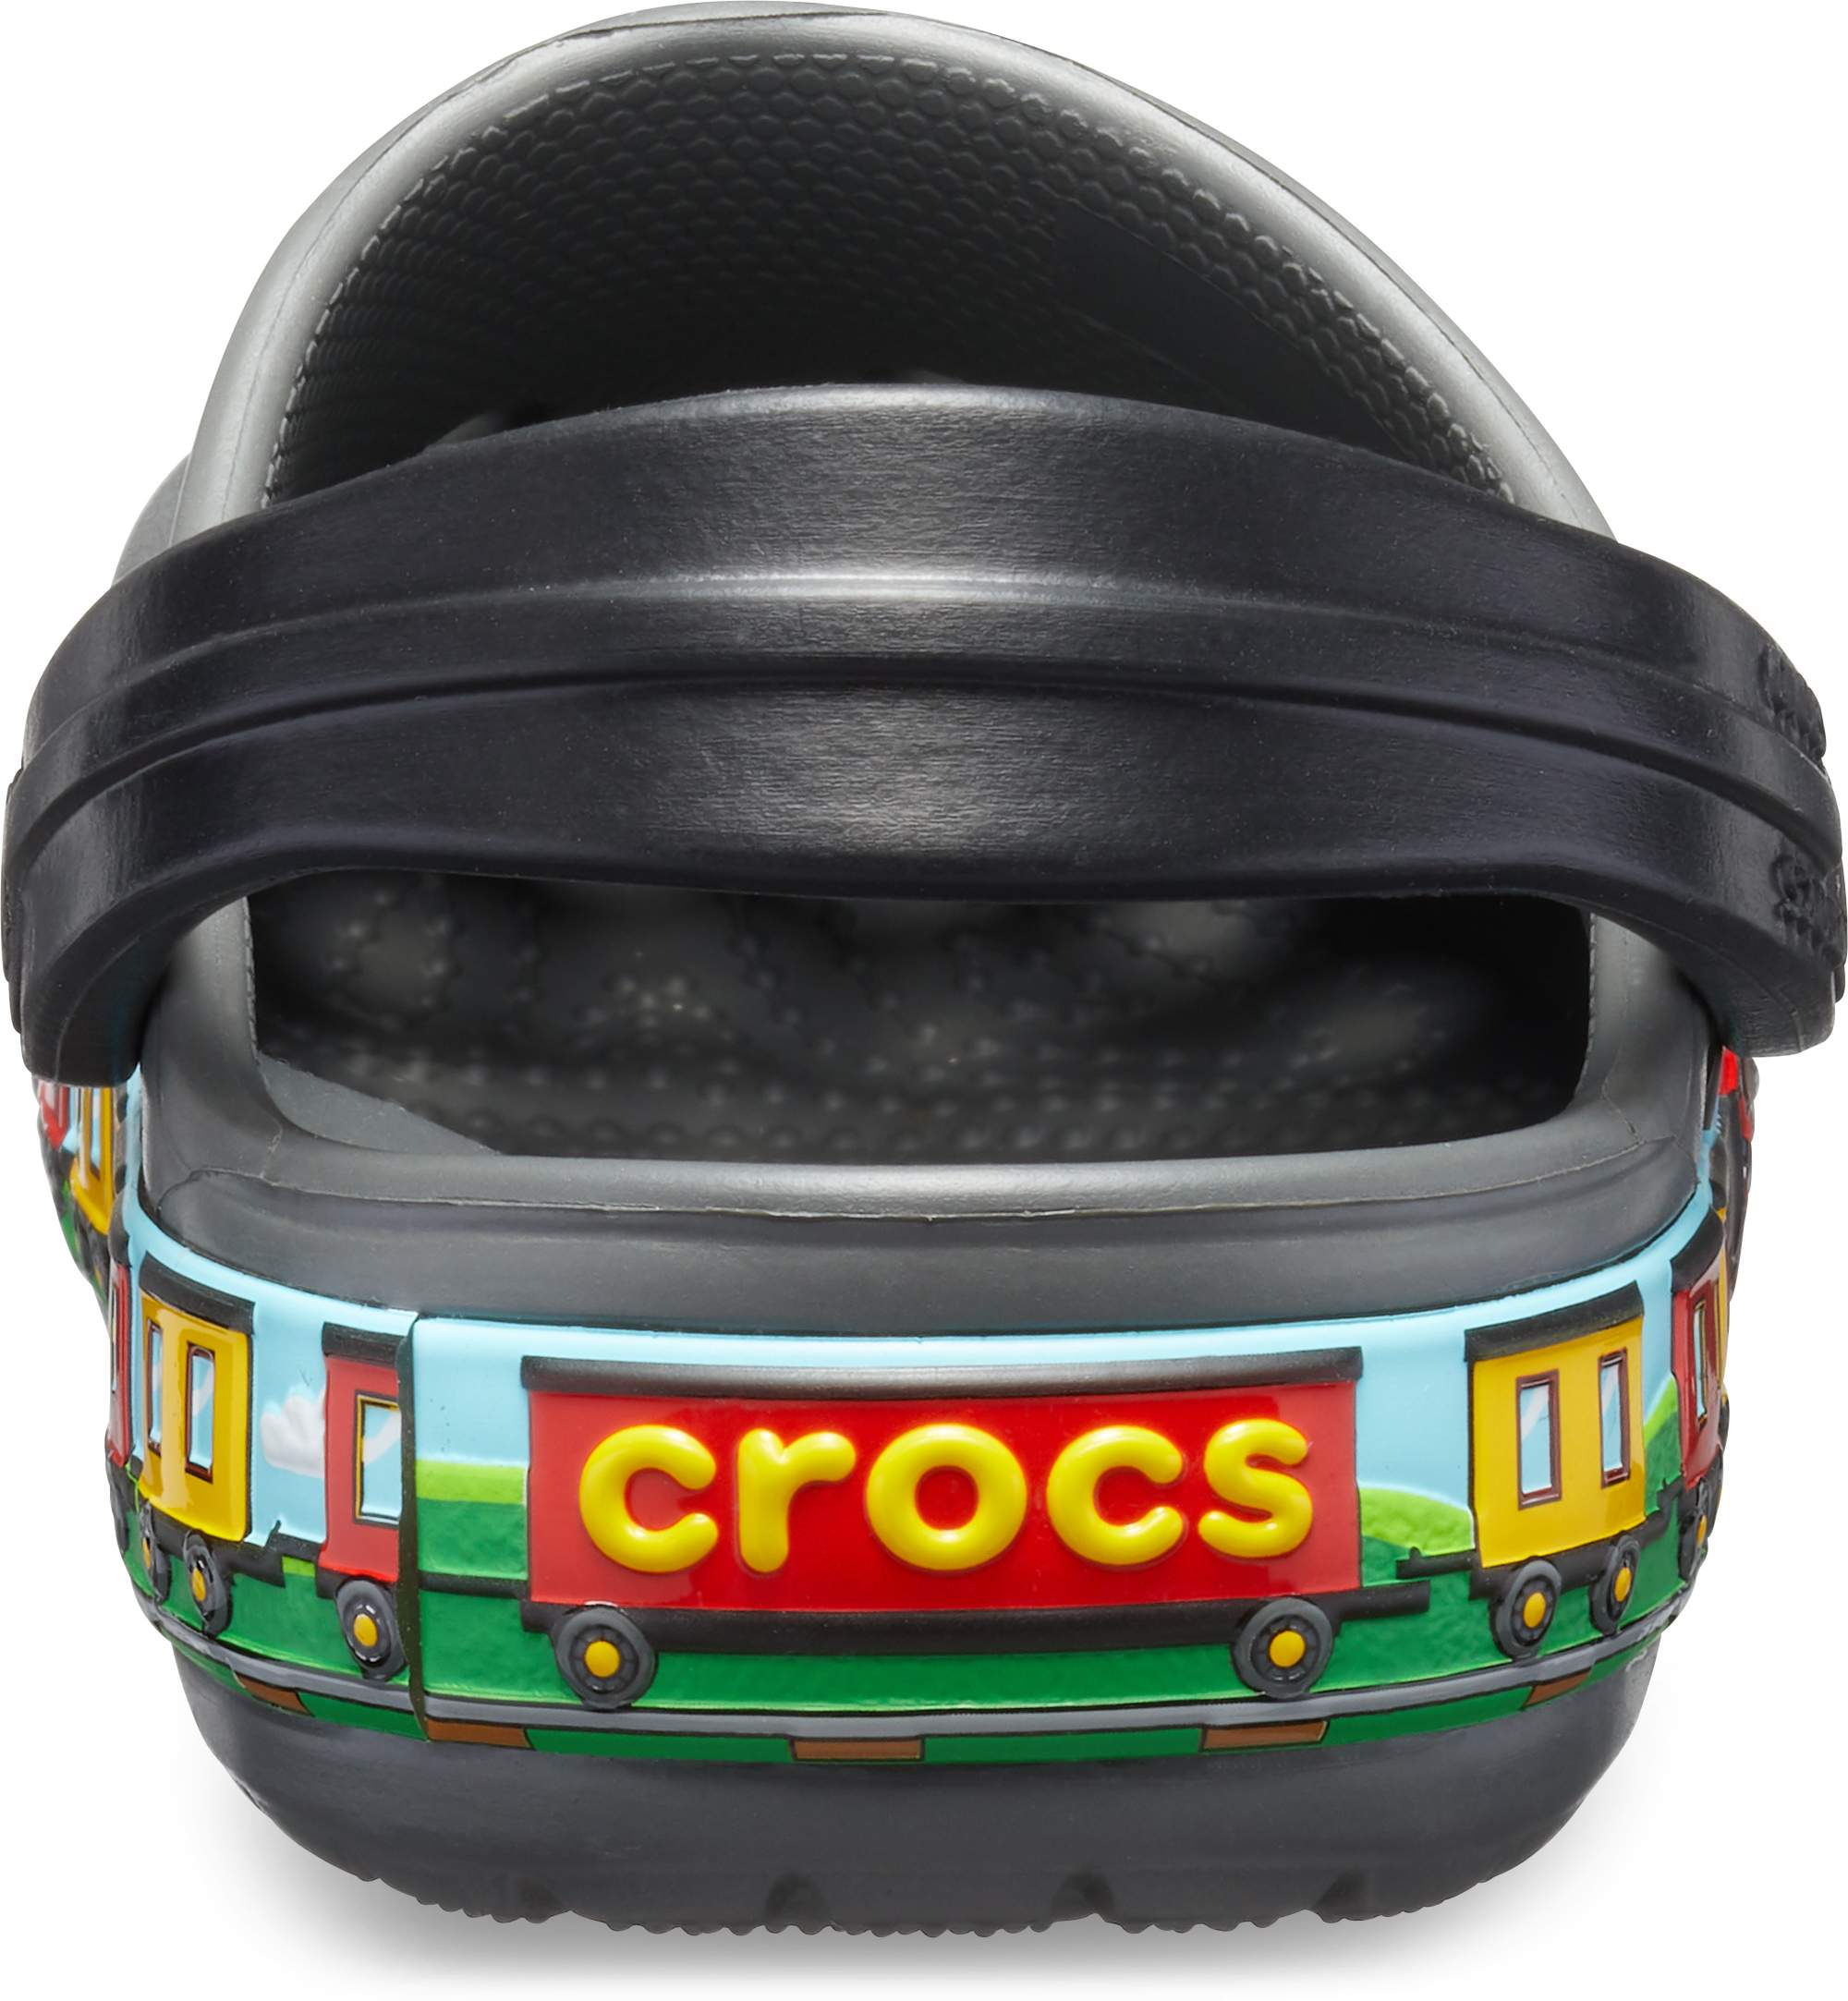 crocs train